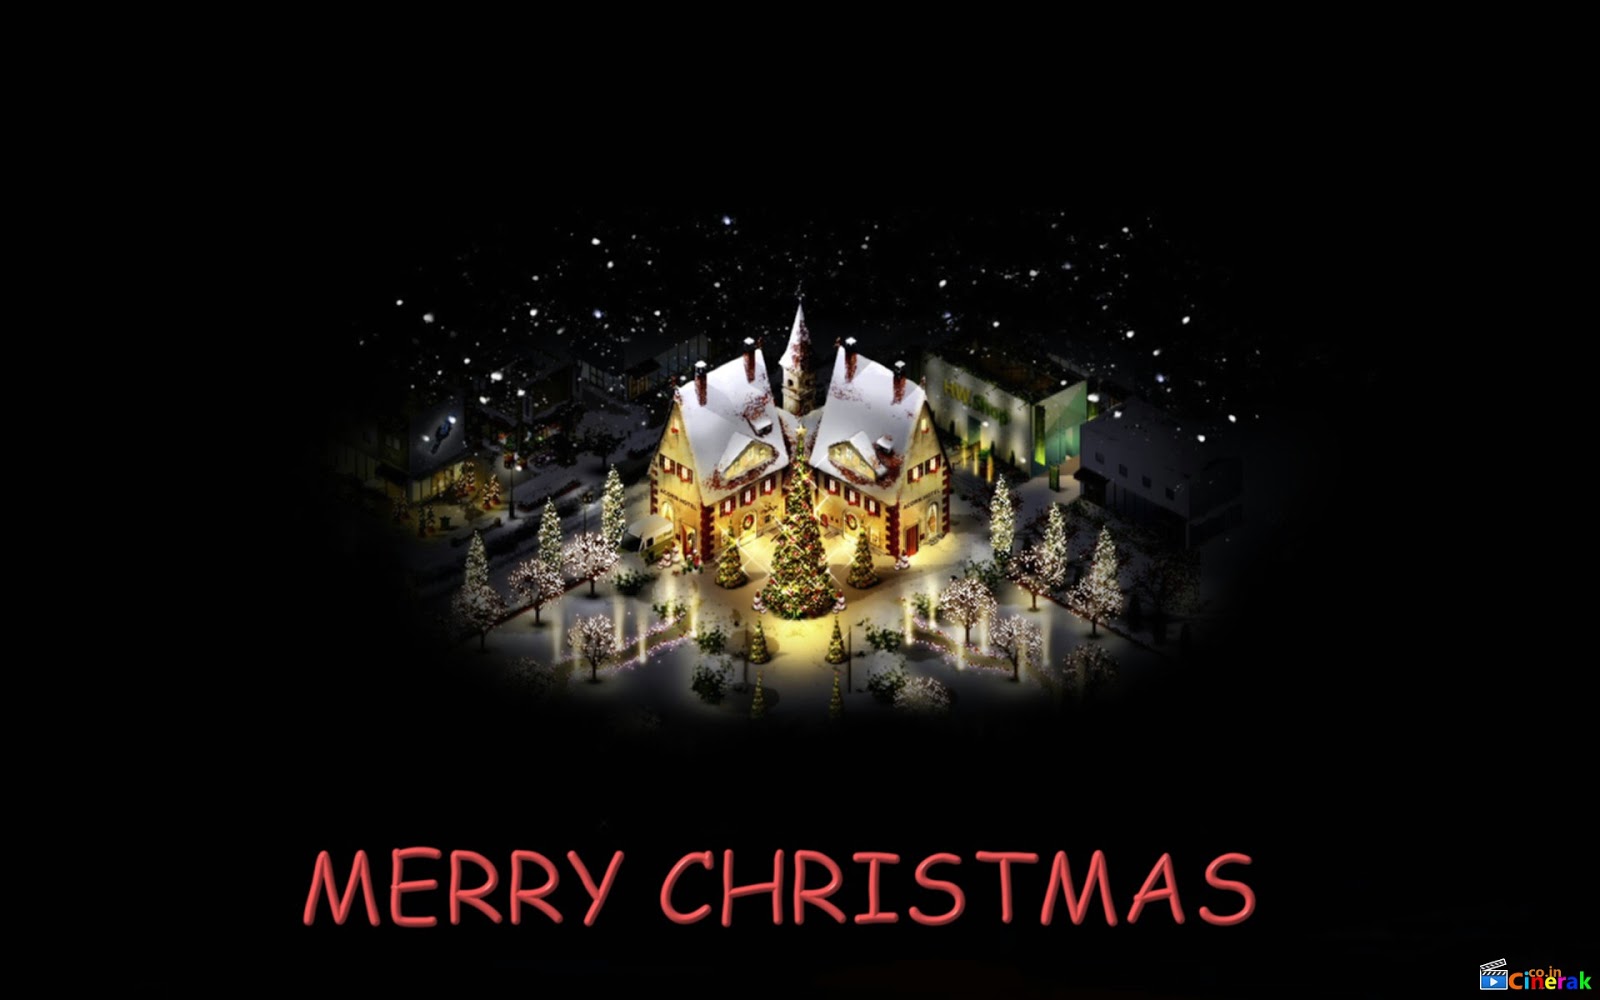 http://3.bp.blogspot.com/-Ja0oURxHhow/UNHKlDh4lHI/AAAAAAAAhyc/UZnPKpSqIu8/s1600/Merry-Christmas-Hd-Desktop-2012-Wallpapers+(16).jpg